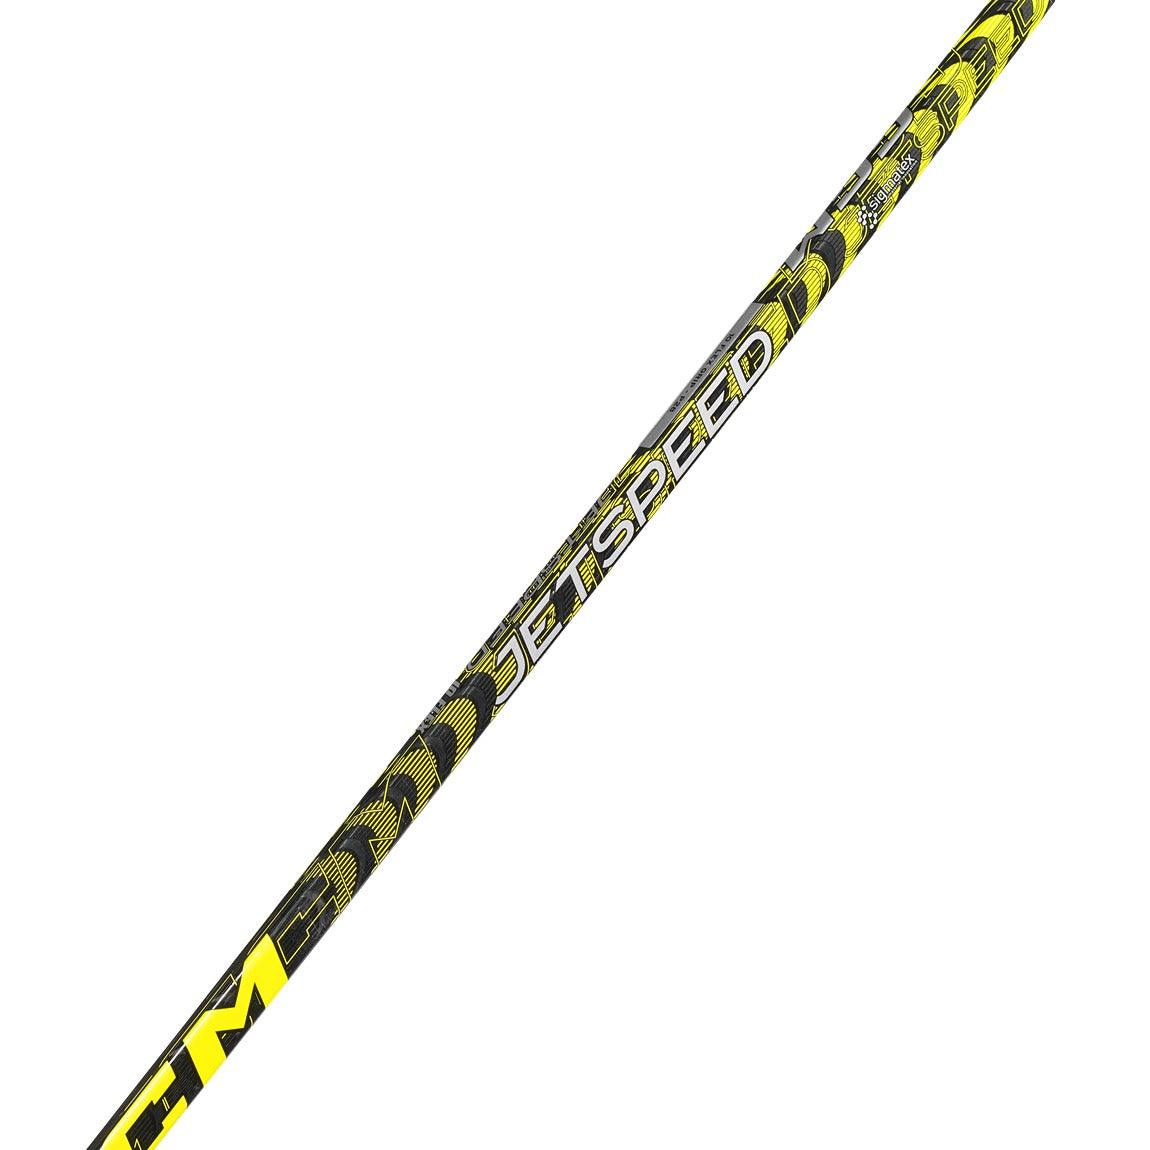 CCM Jetspeed Hockey Stick (10 Flex) - Youth